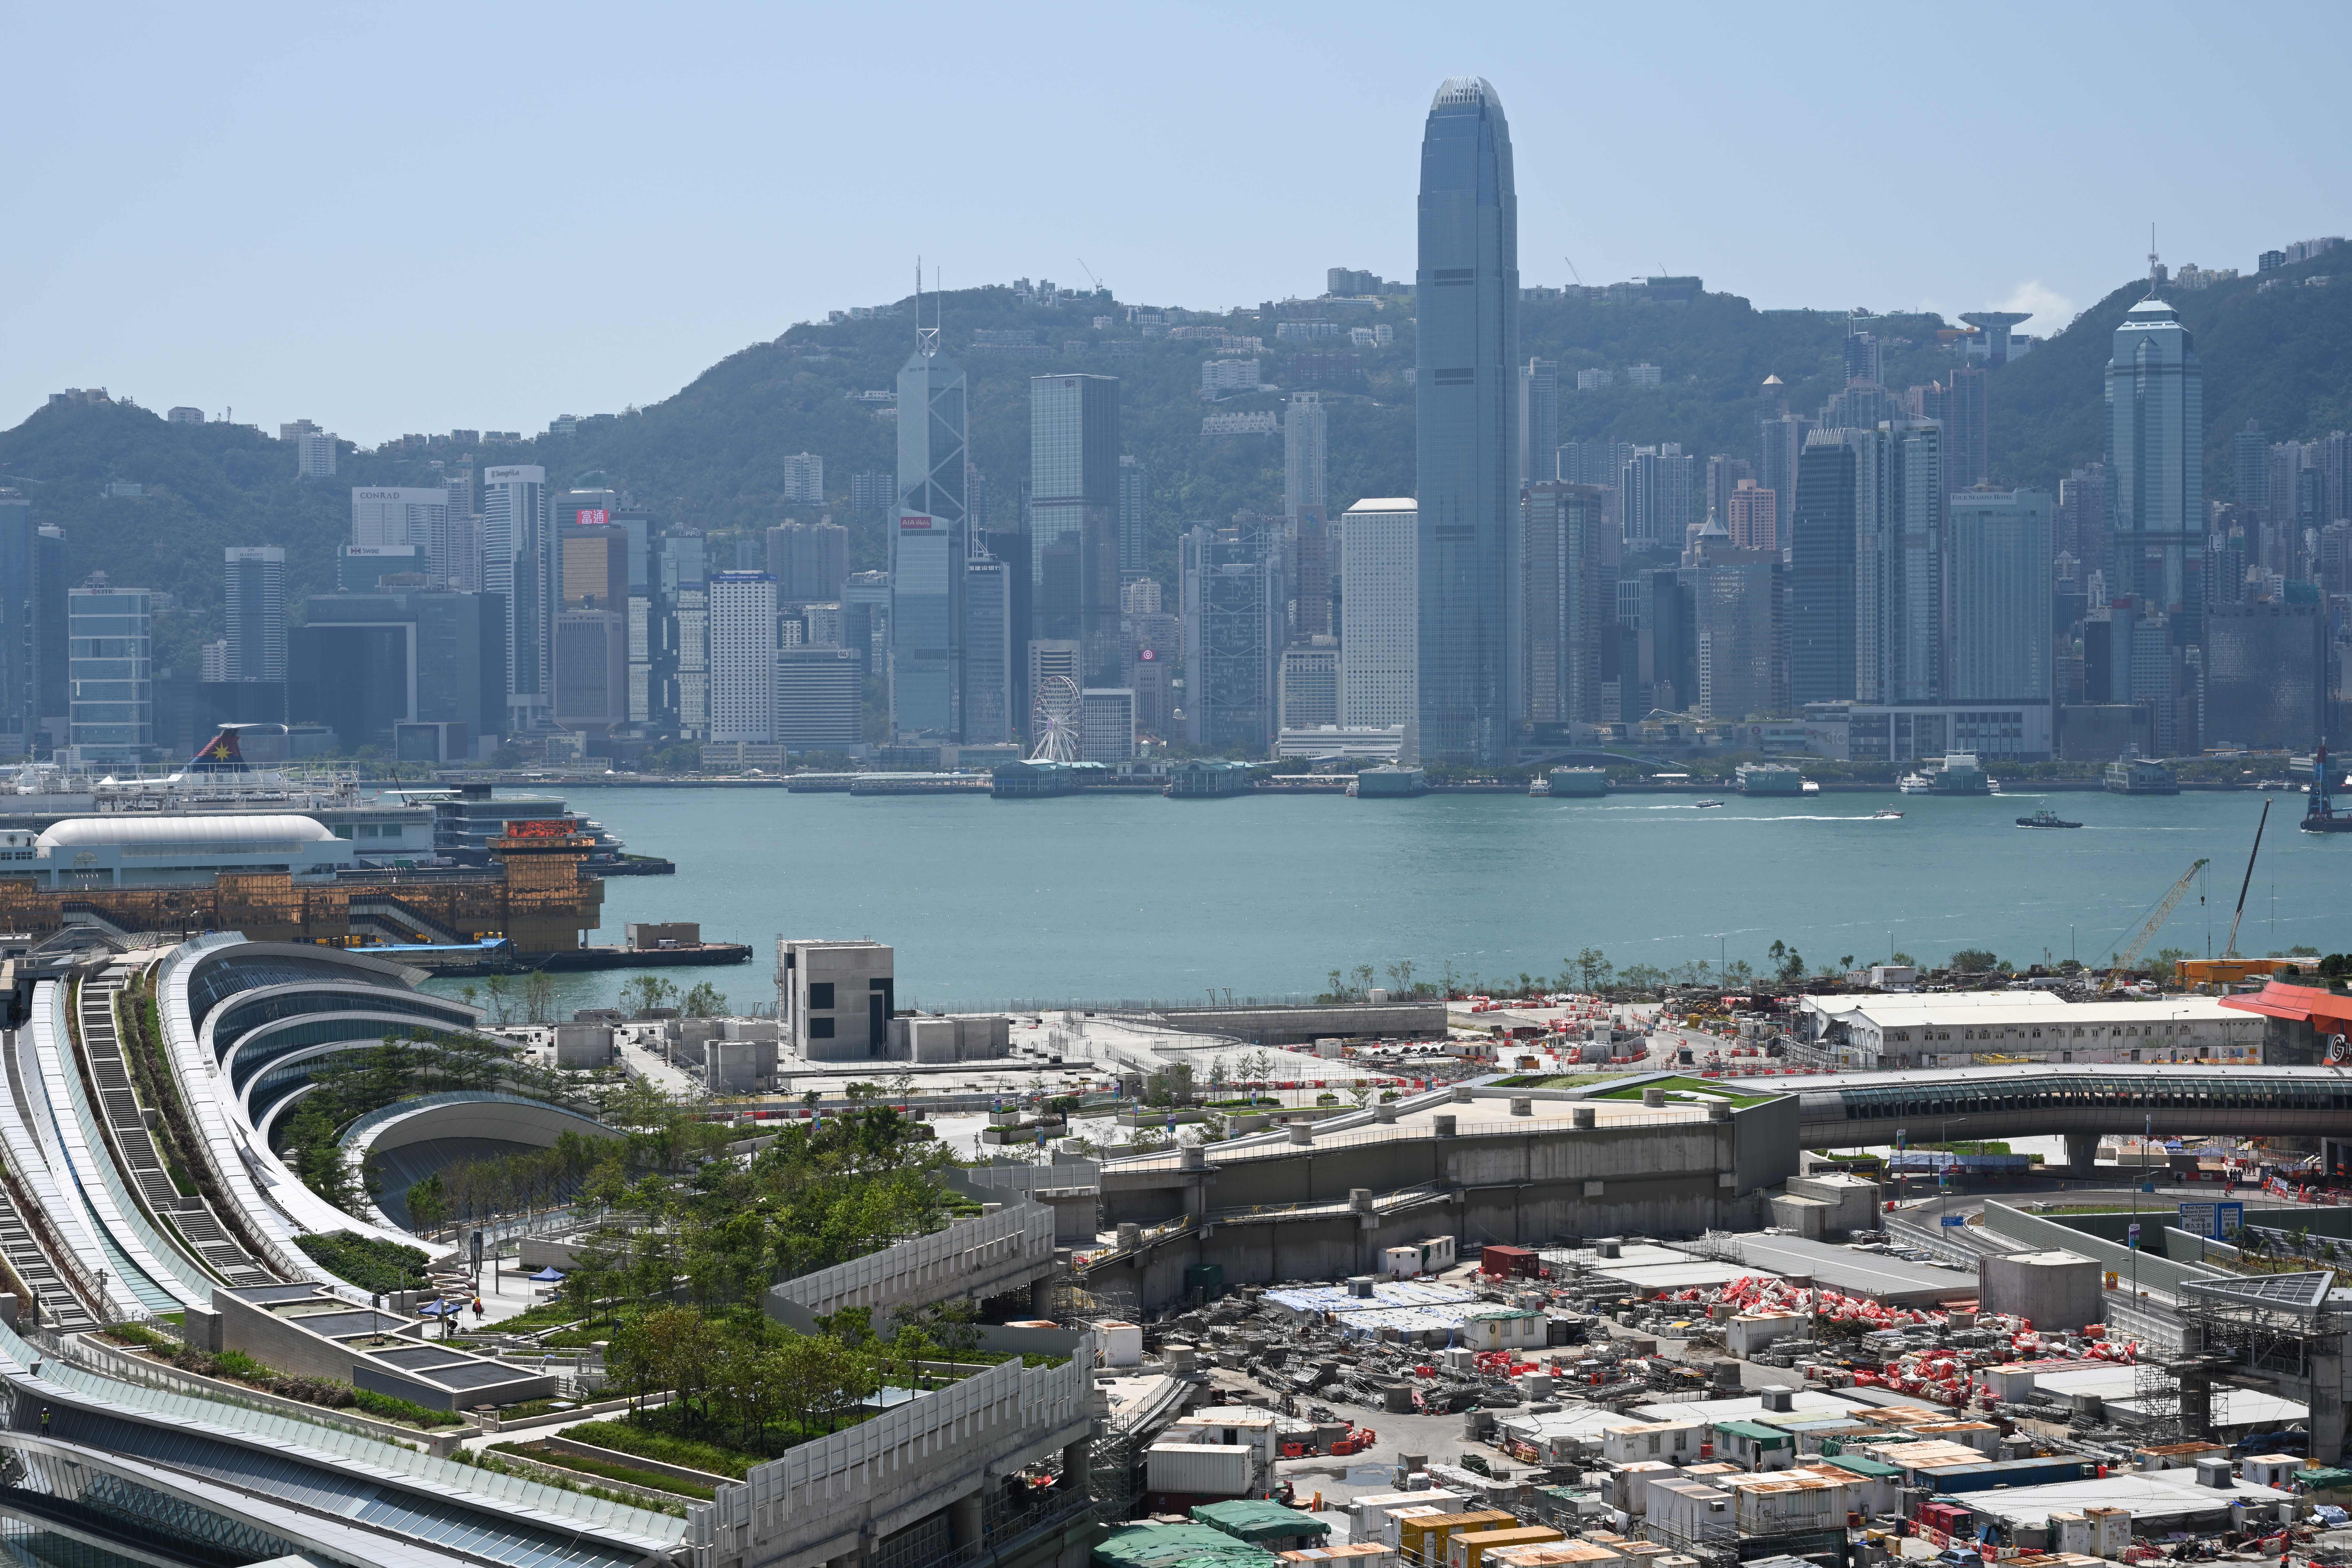 美國務院報告 中共干預增加損害香港發展 大紀元時報香港 獨立敢言的良心媒體